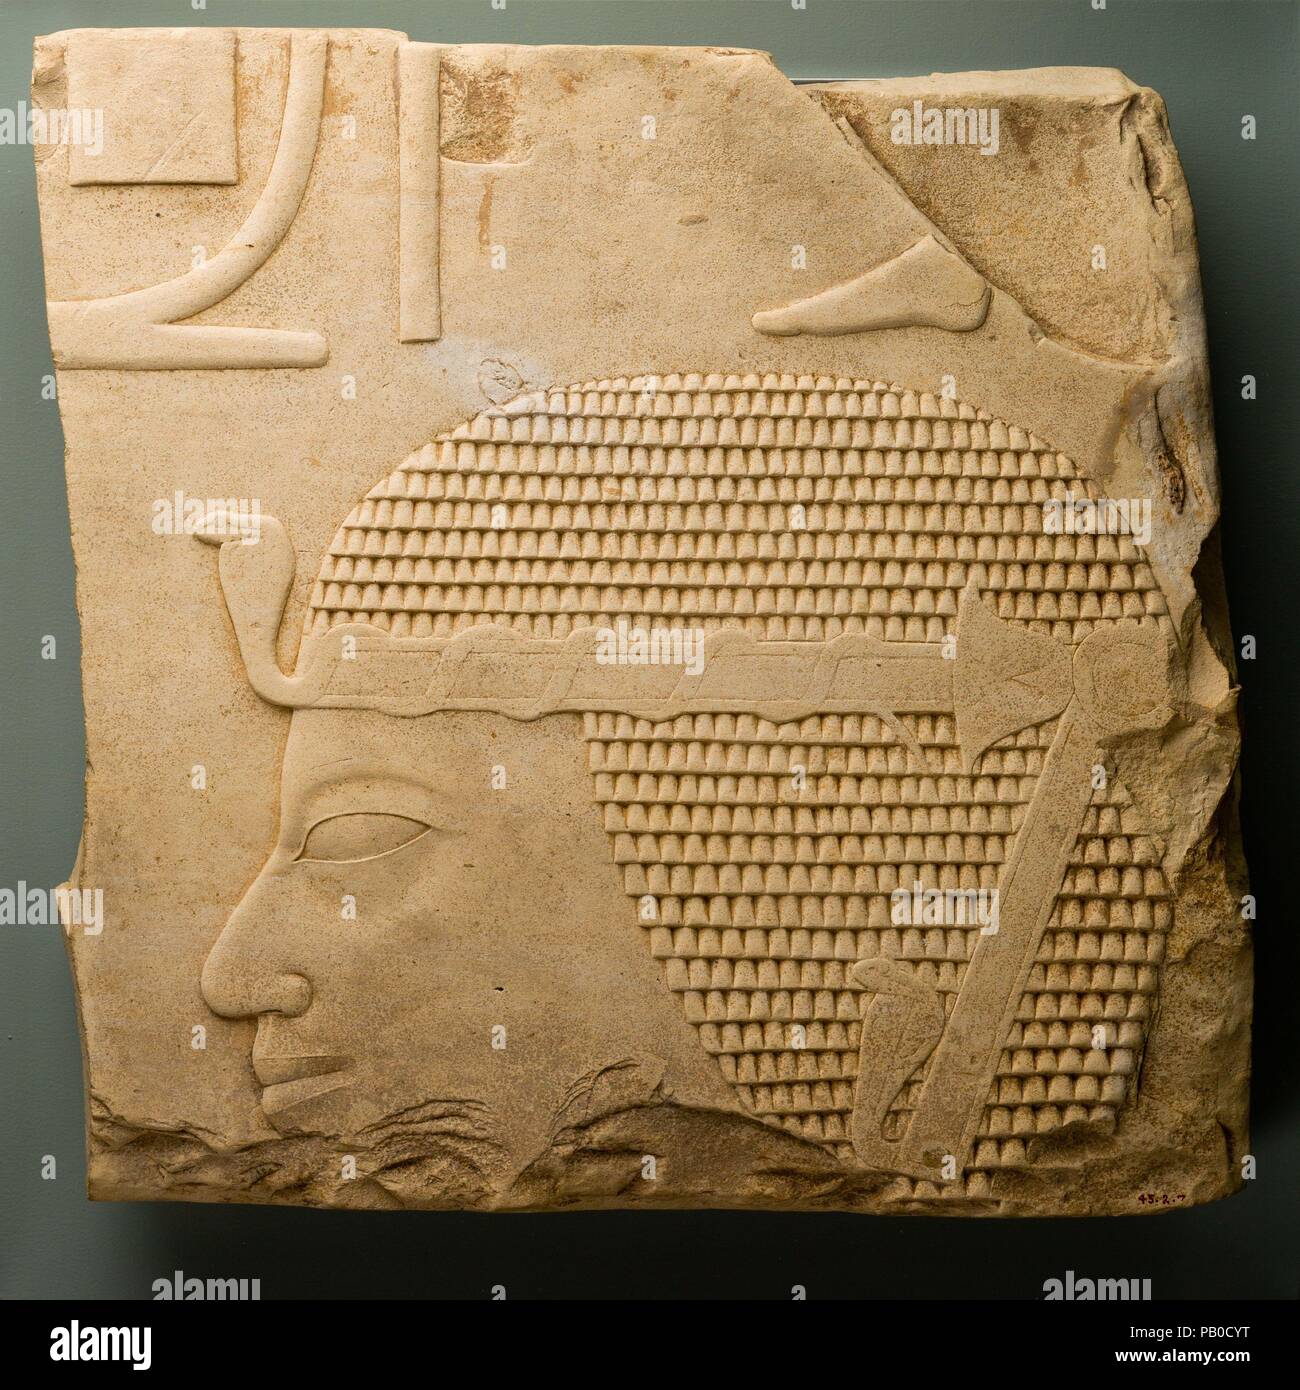 Relief mit dem Leiter des Amenhotep I. Abmessungen: h. 44 cm (17 5/16 Zoll); w. 44 cm (17 in 5/16). Dynastie: Amenhotep I. Datum: ca 1525-1504 v. Chr.. Die fragmentarischen Kartusche in der oberen linken Ecke dieses Relief bewahrt die letzten Buchstaben des Namens Amenhotep. Im Dynasty 18, es gab vier Könige mit diesem Namen", was "Amun zufrieden ist." Die Identität der König hier dargestellt von der erhaltenen Profil klar ist. Die Form der Nase und die kurze Oberlippe sind nahezu identisch mit dem Profil einer Leiter des Amenhotep I., 26.3.30, in der Sammlung des Museums (Zusätzliche photog siehe Stockfoto